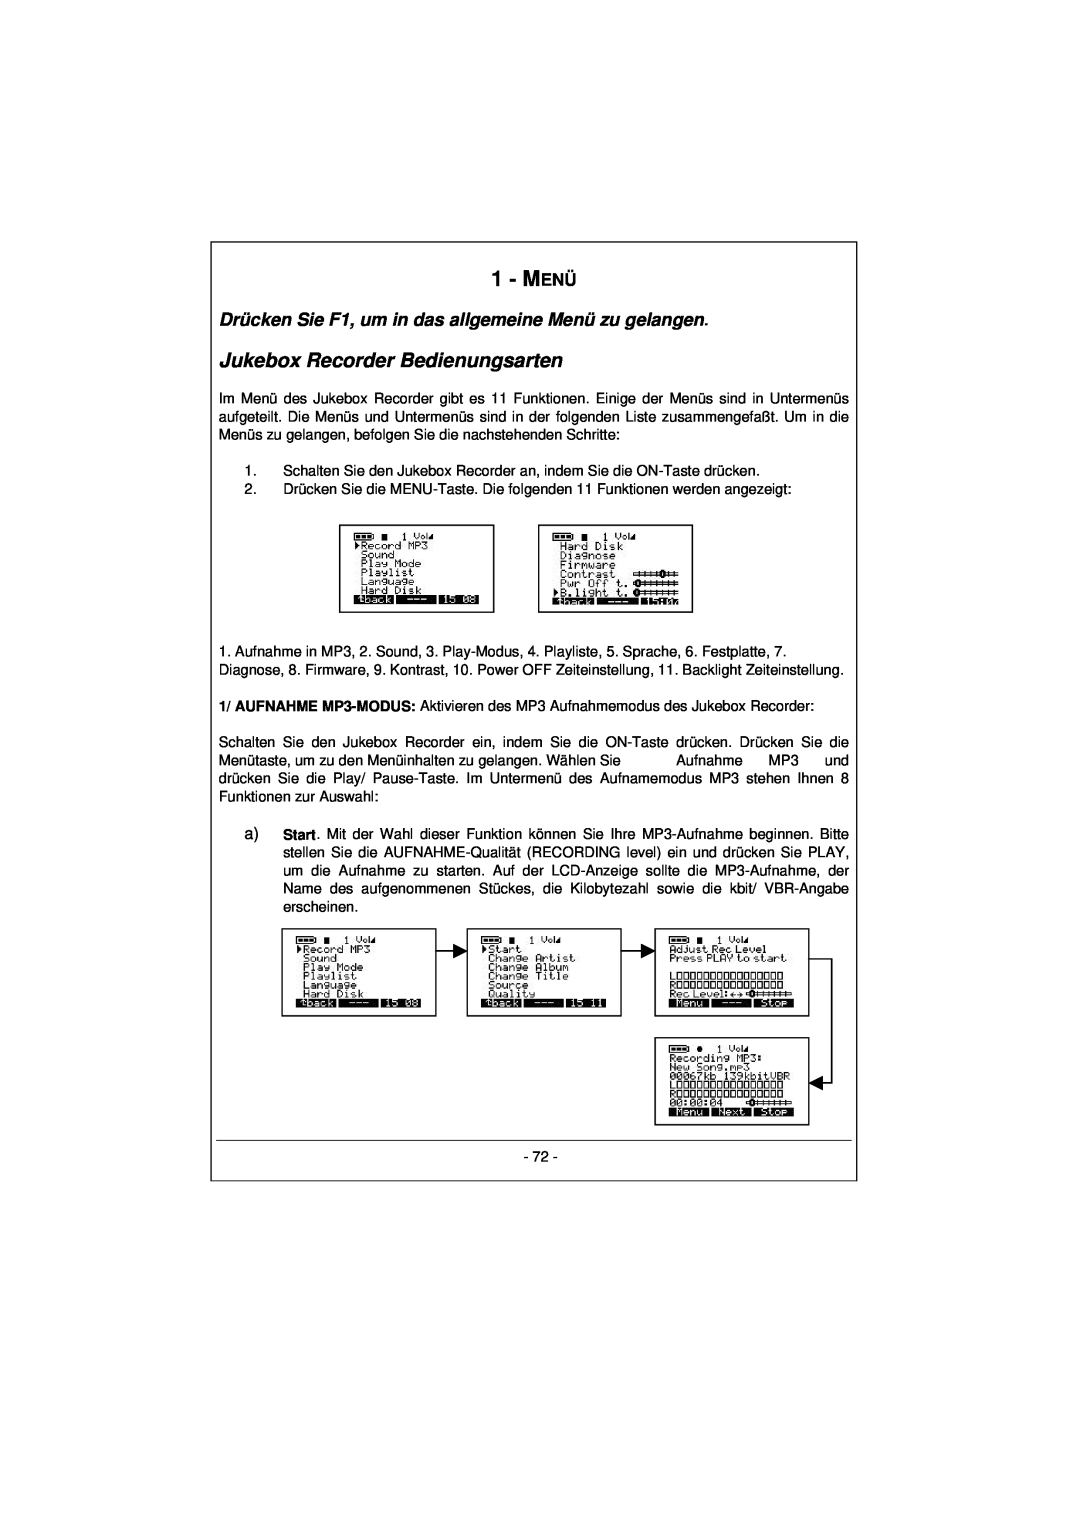 Archos 100628 manual Menü, Jukebox Recorder Bedienungsarten 